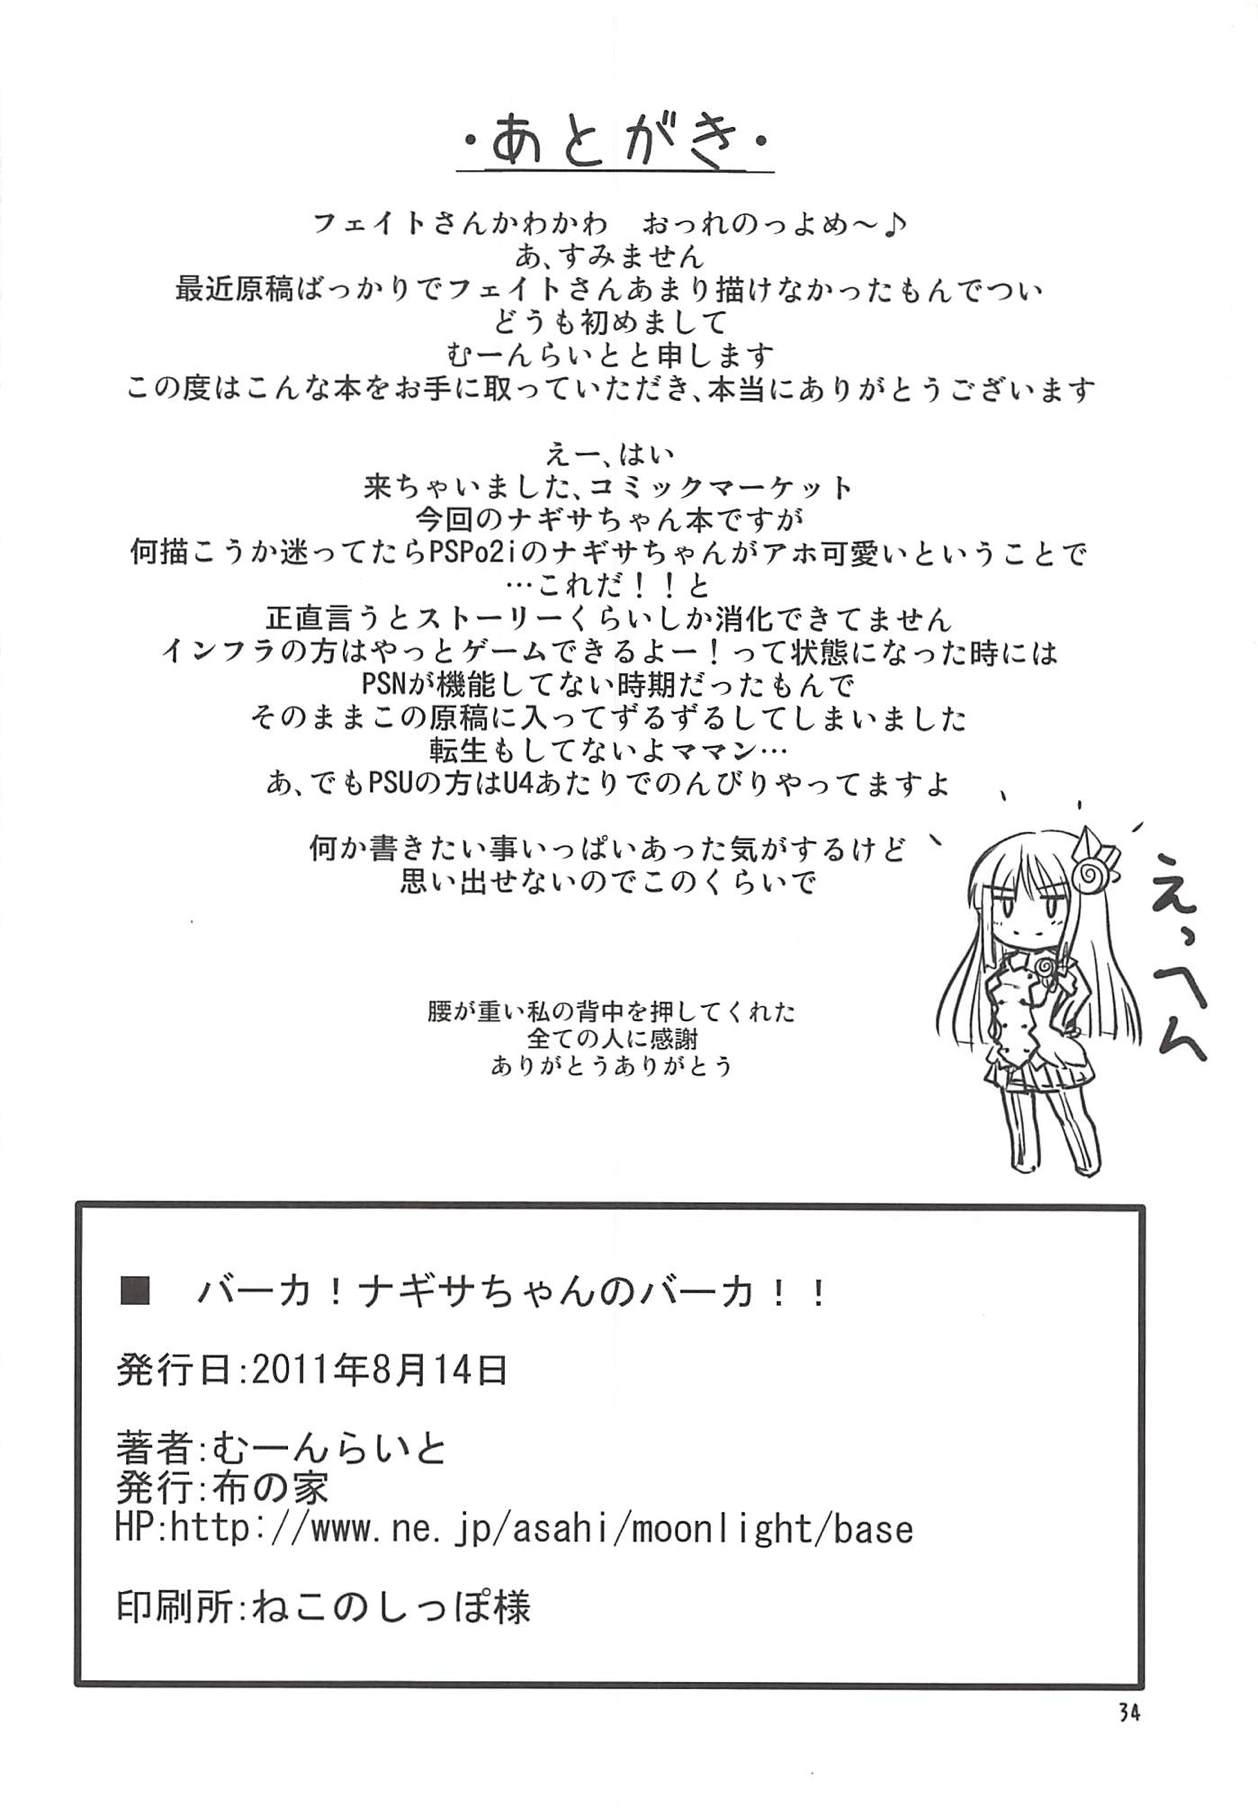 Siririca Baka! Nagisa-chan no Baka!! - Phantasy star portable 2 Submission - Page 33